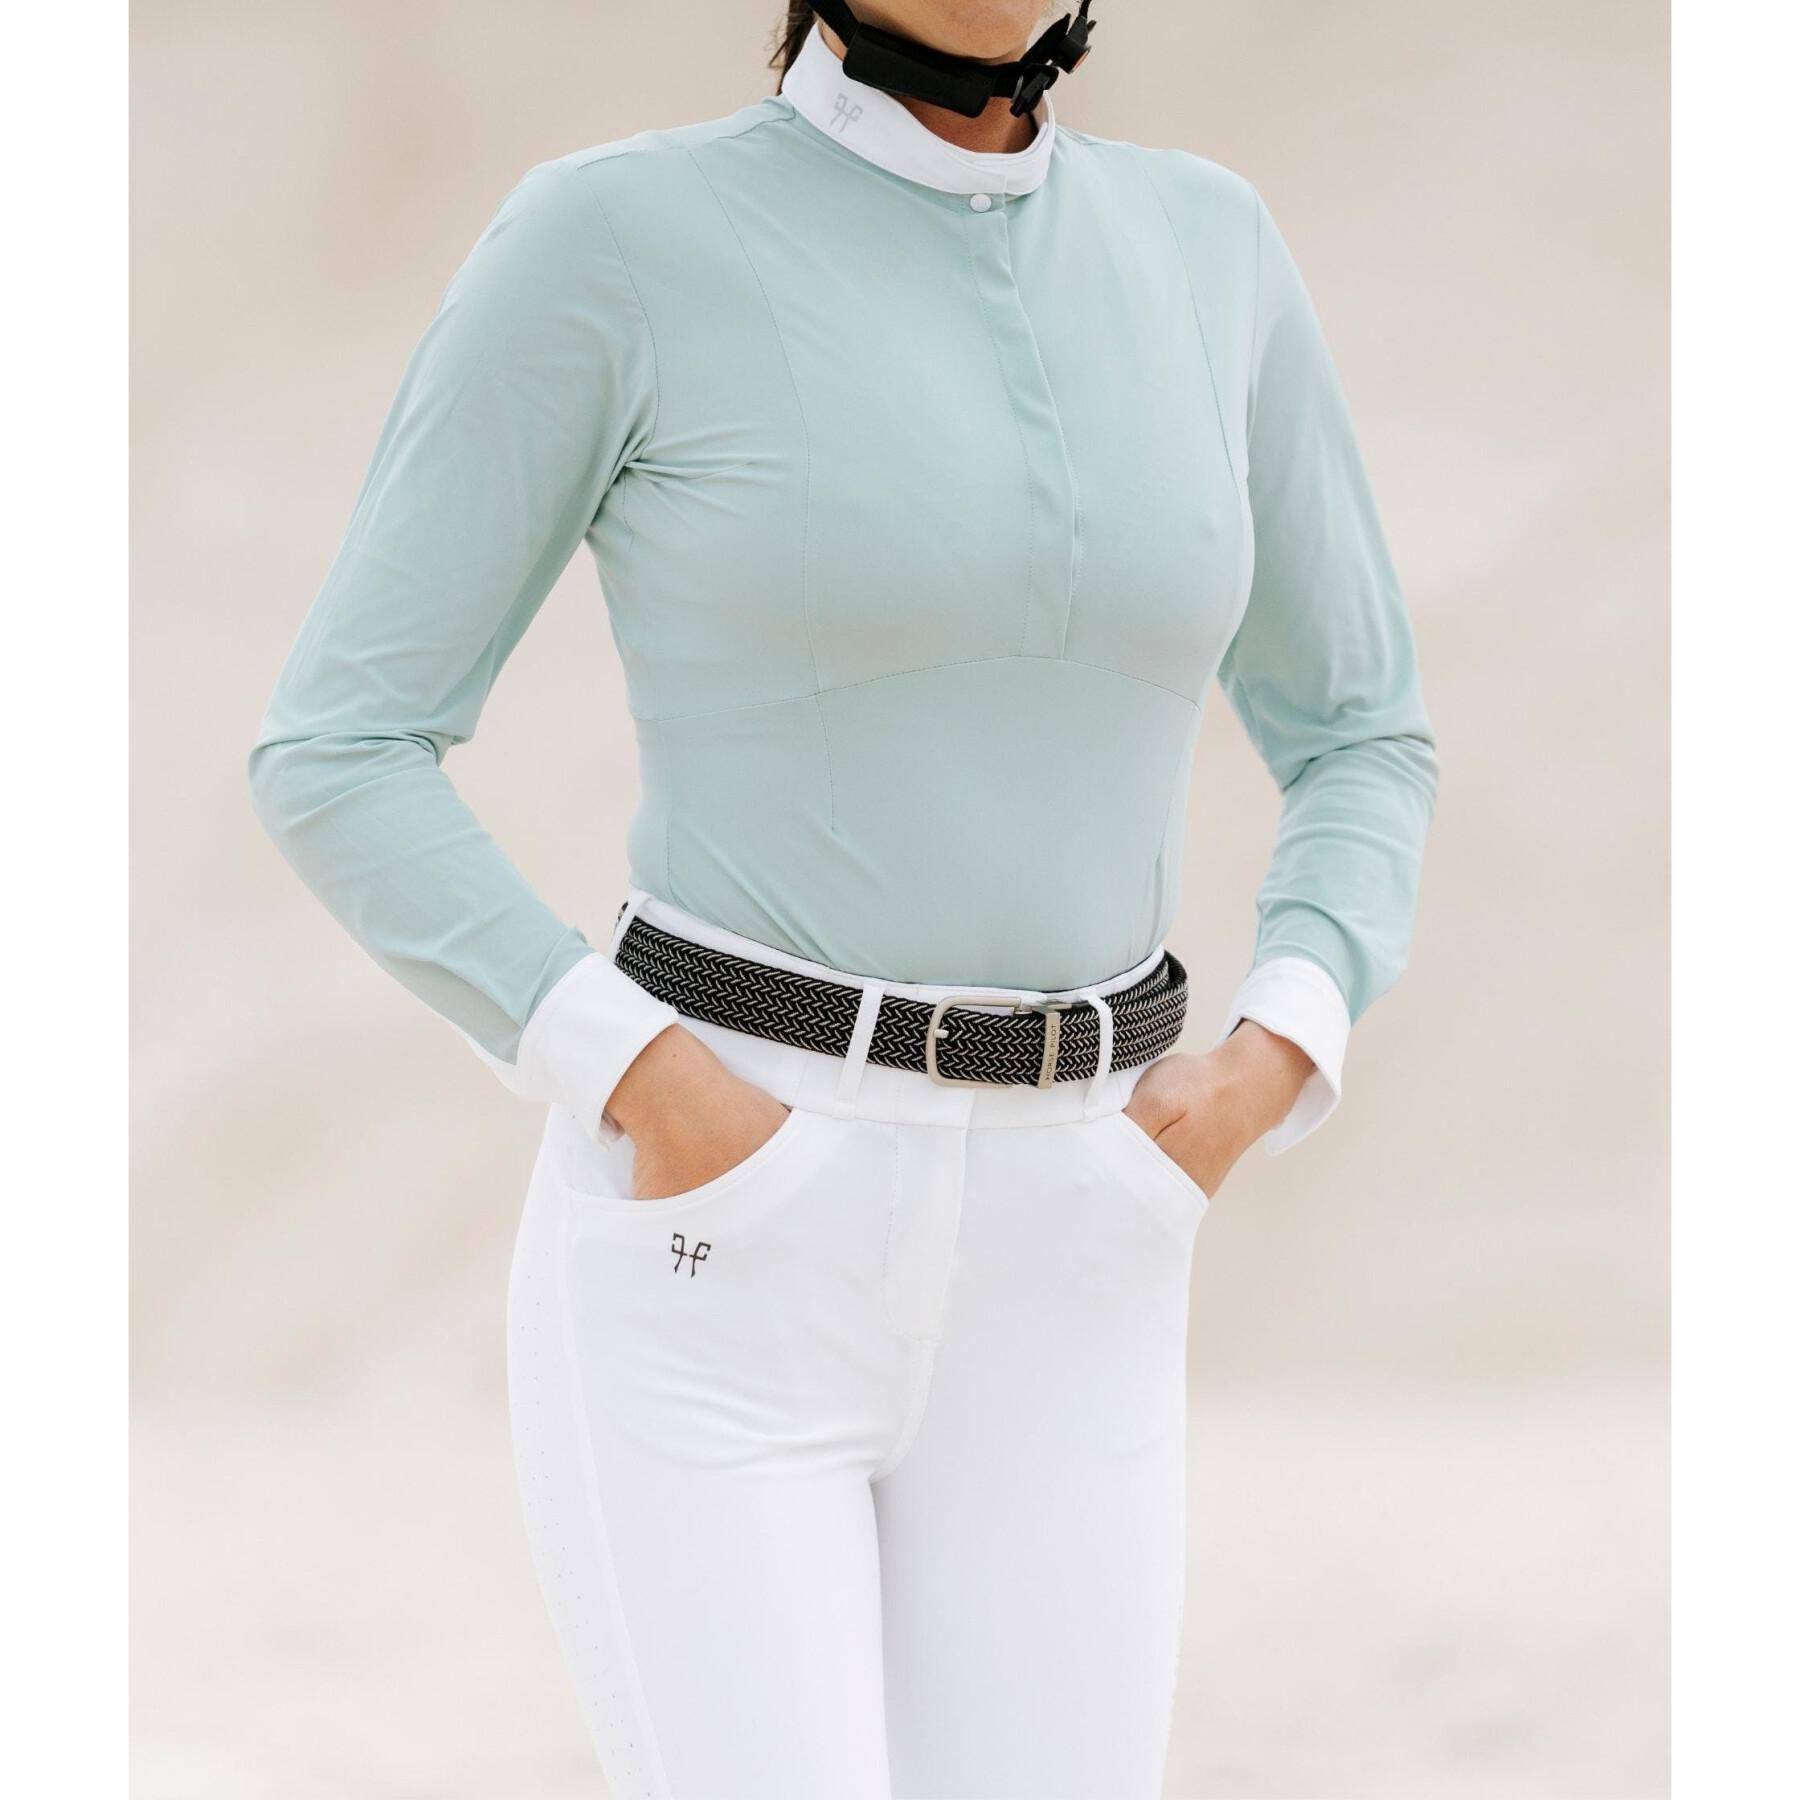 Camisa de competição de equitação feminina Horse Pilot Aerolight